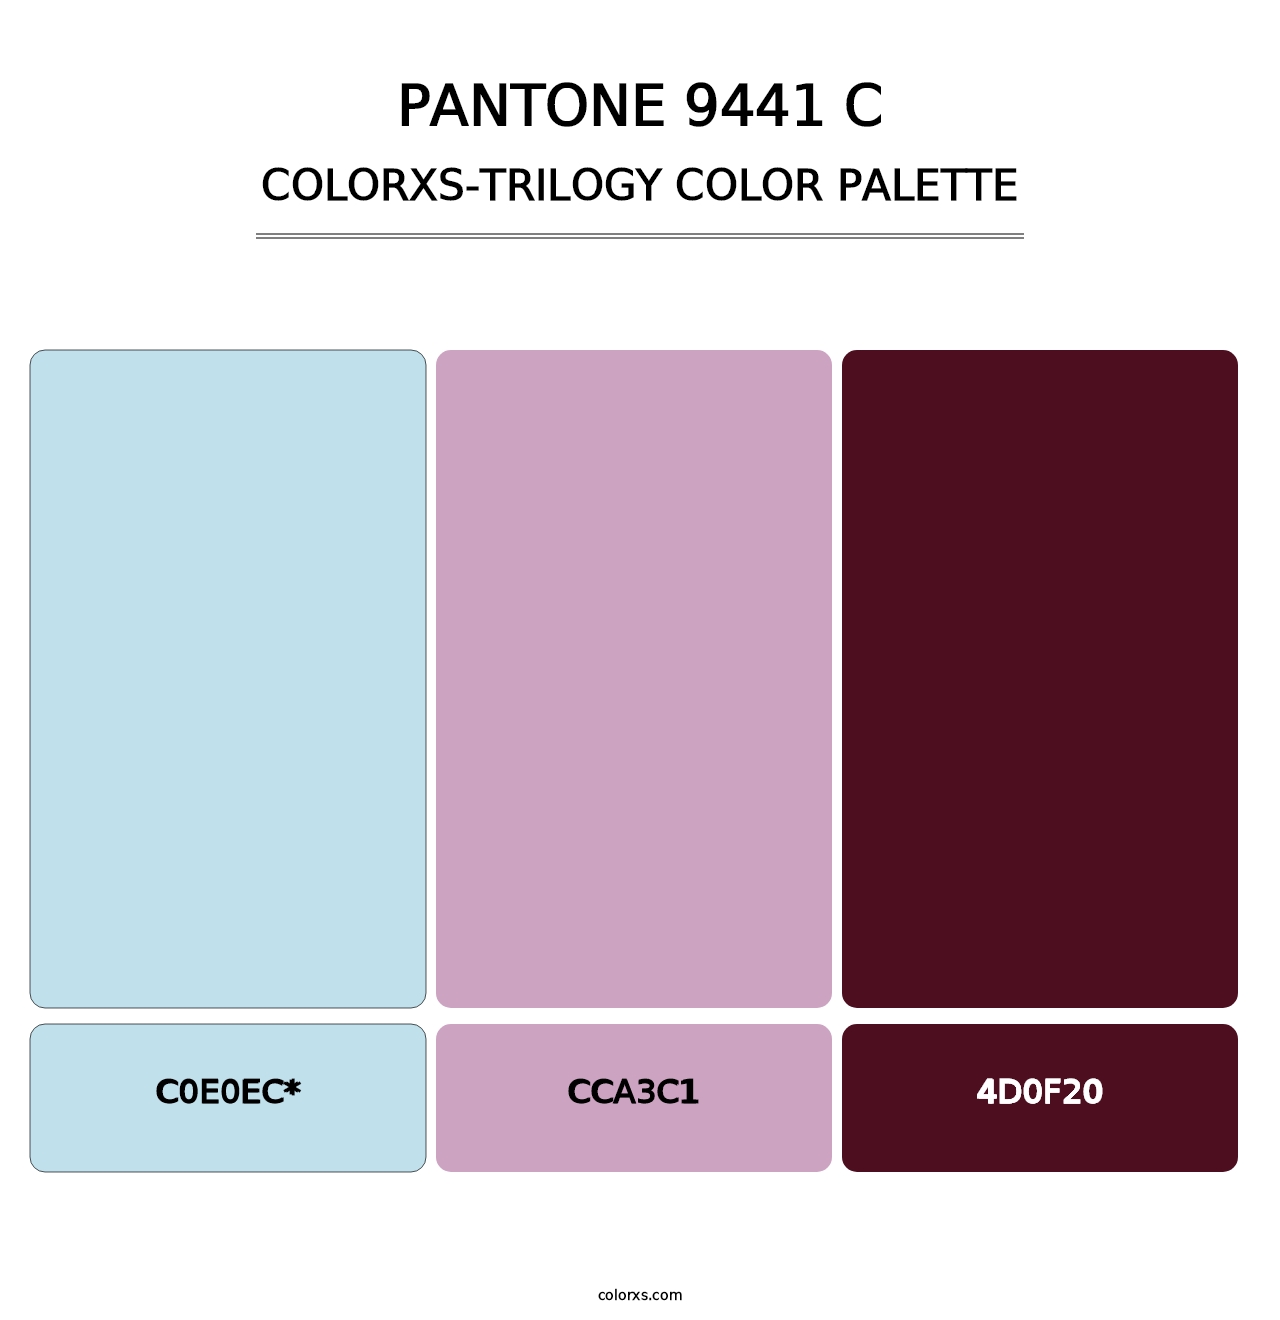 PANTONE 9441 C - Colorxs Trilogy Palette